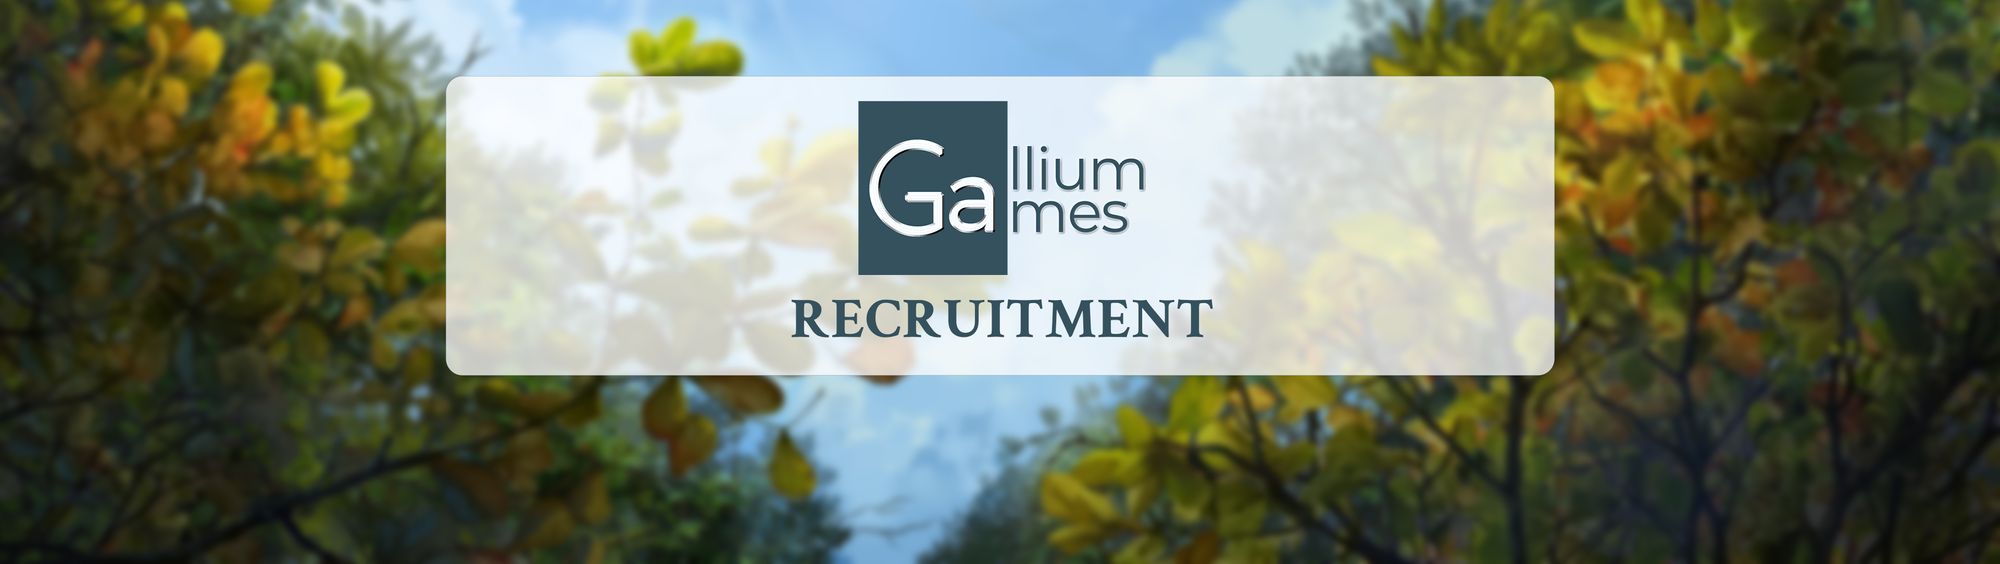 Gallium Games is recruiting!